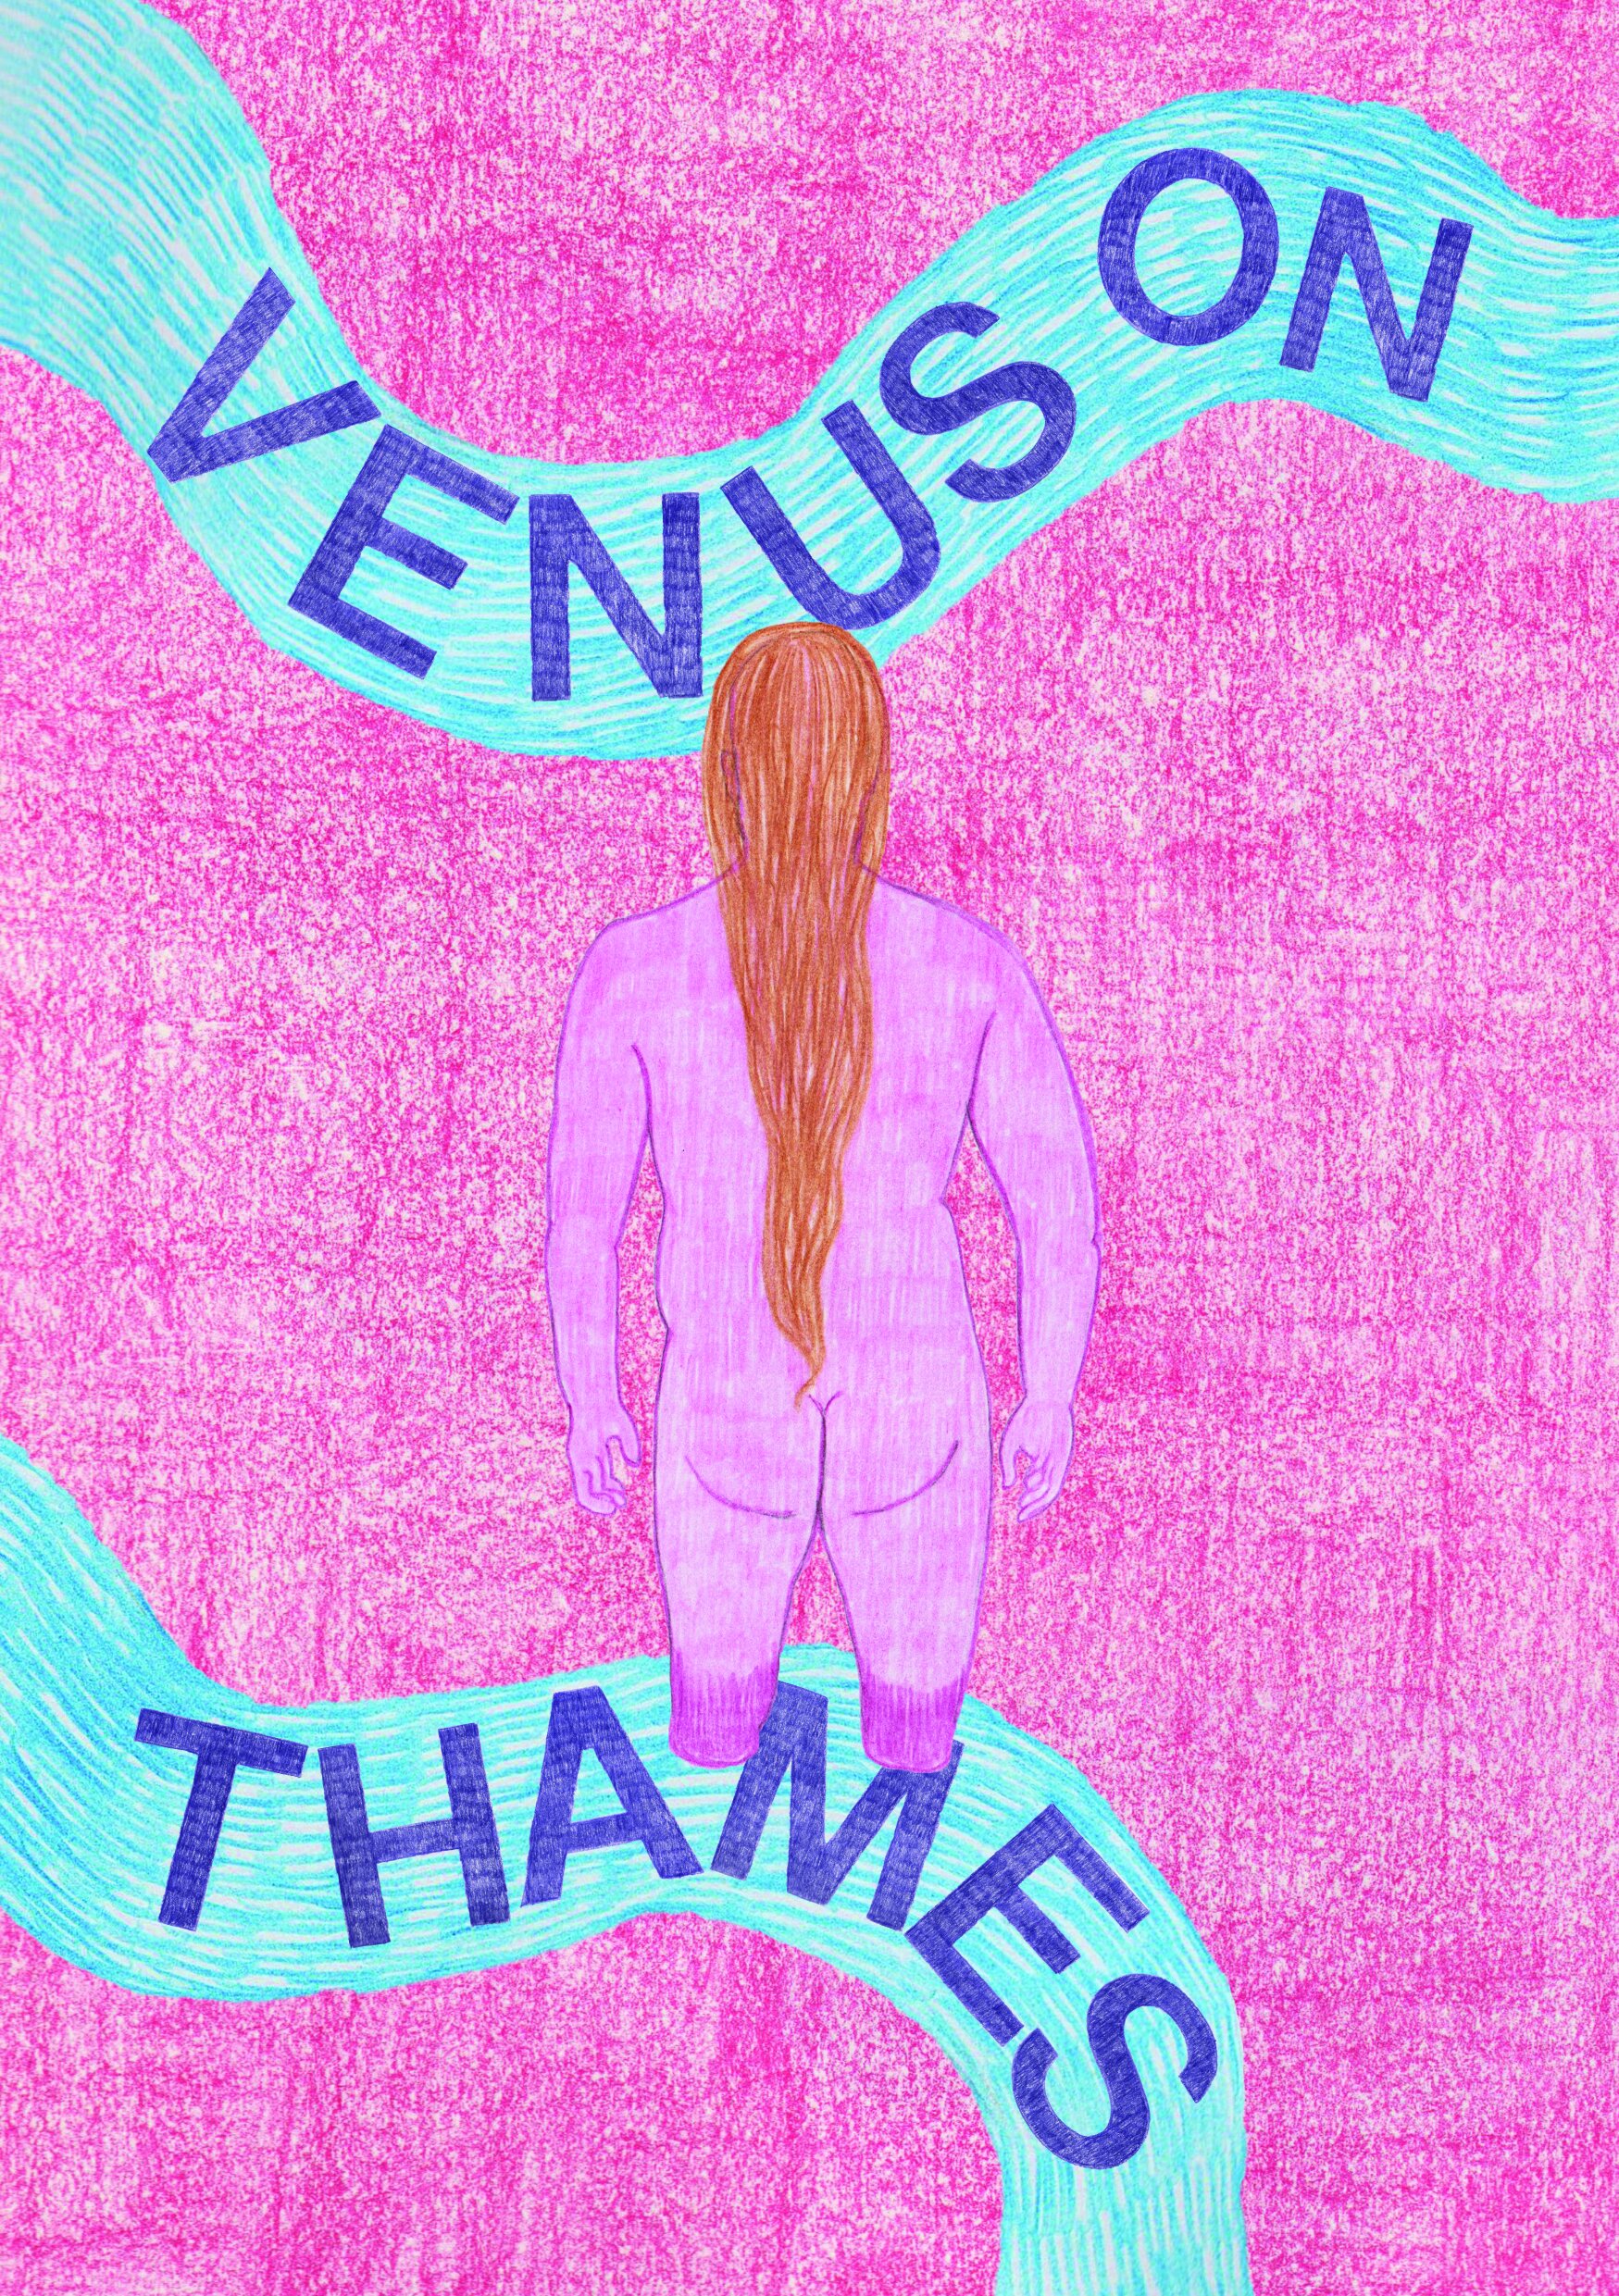 Venus on Thames - Zine